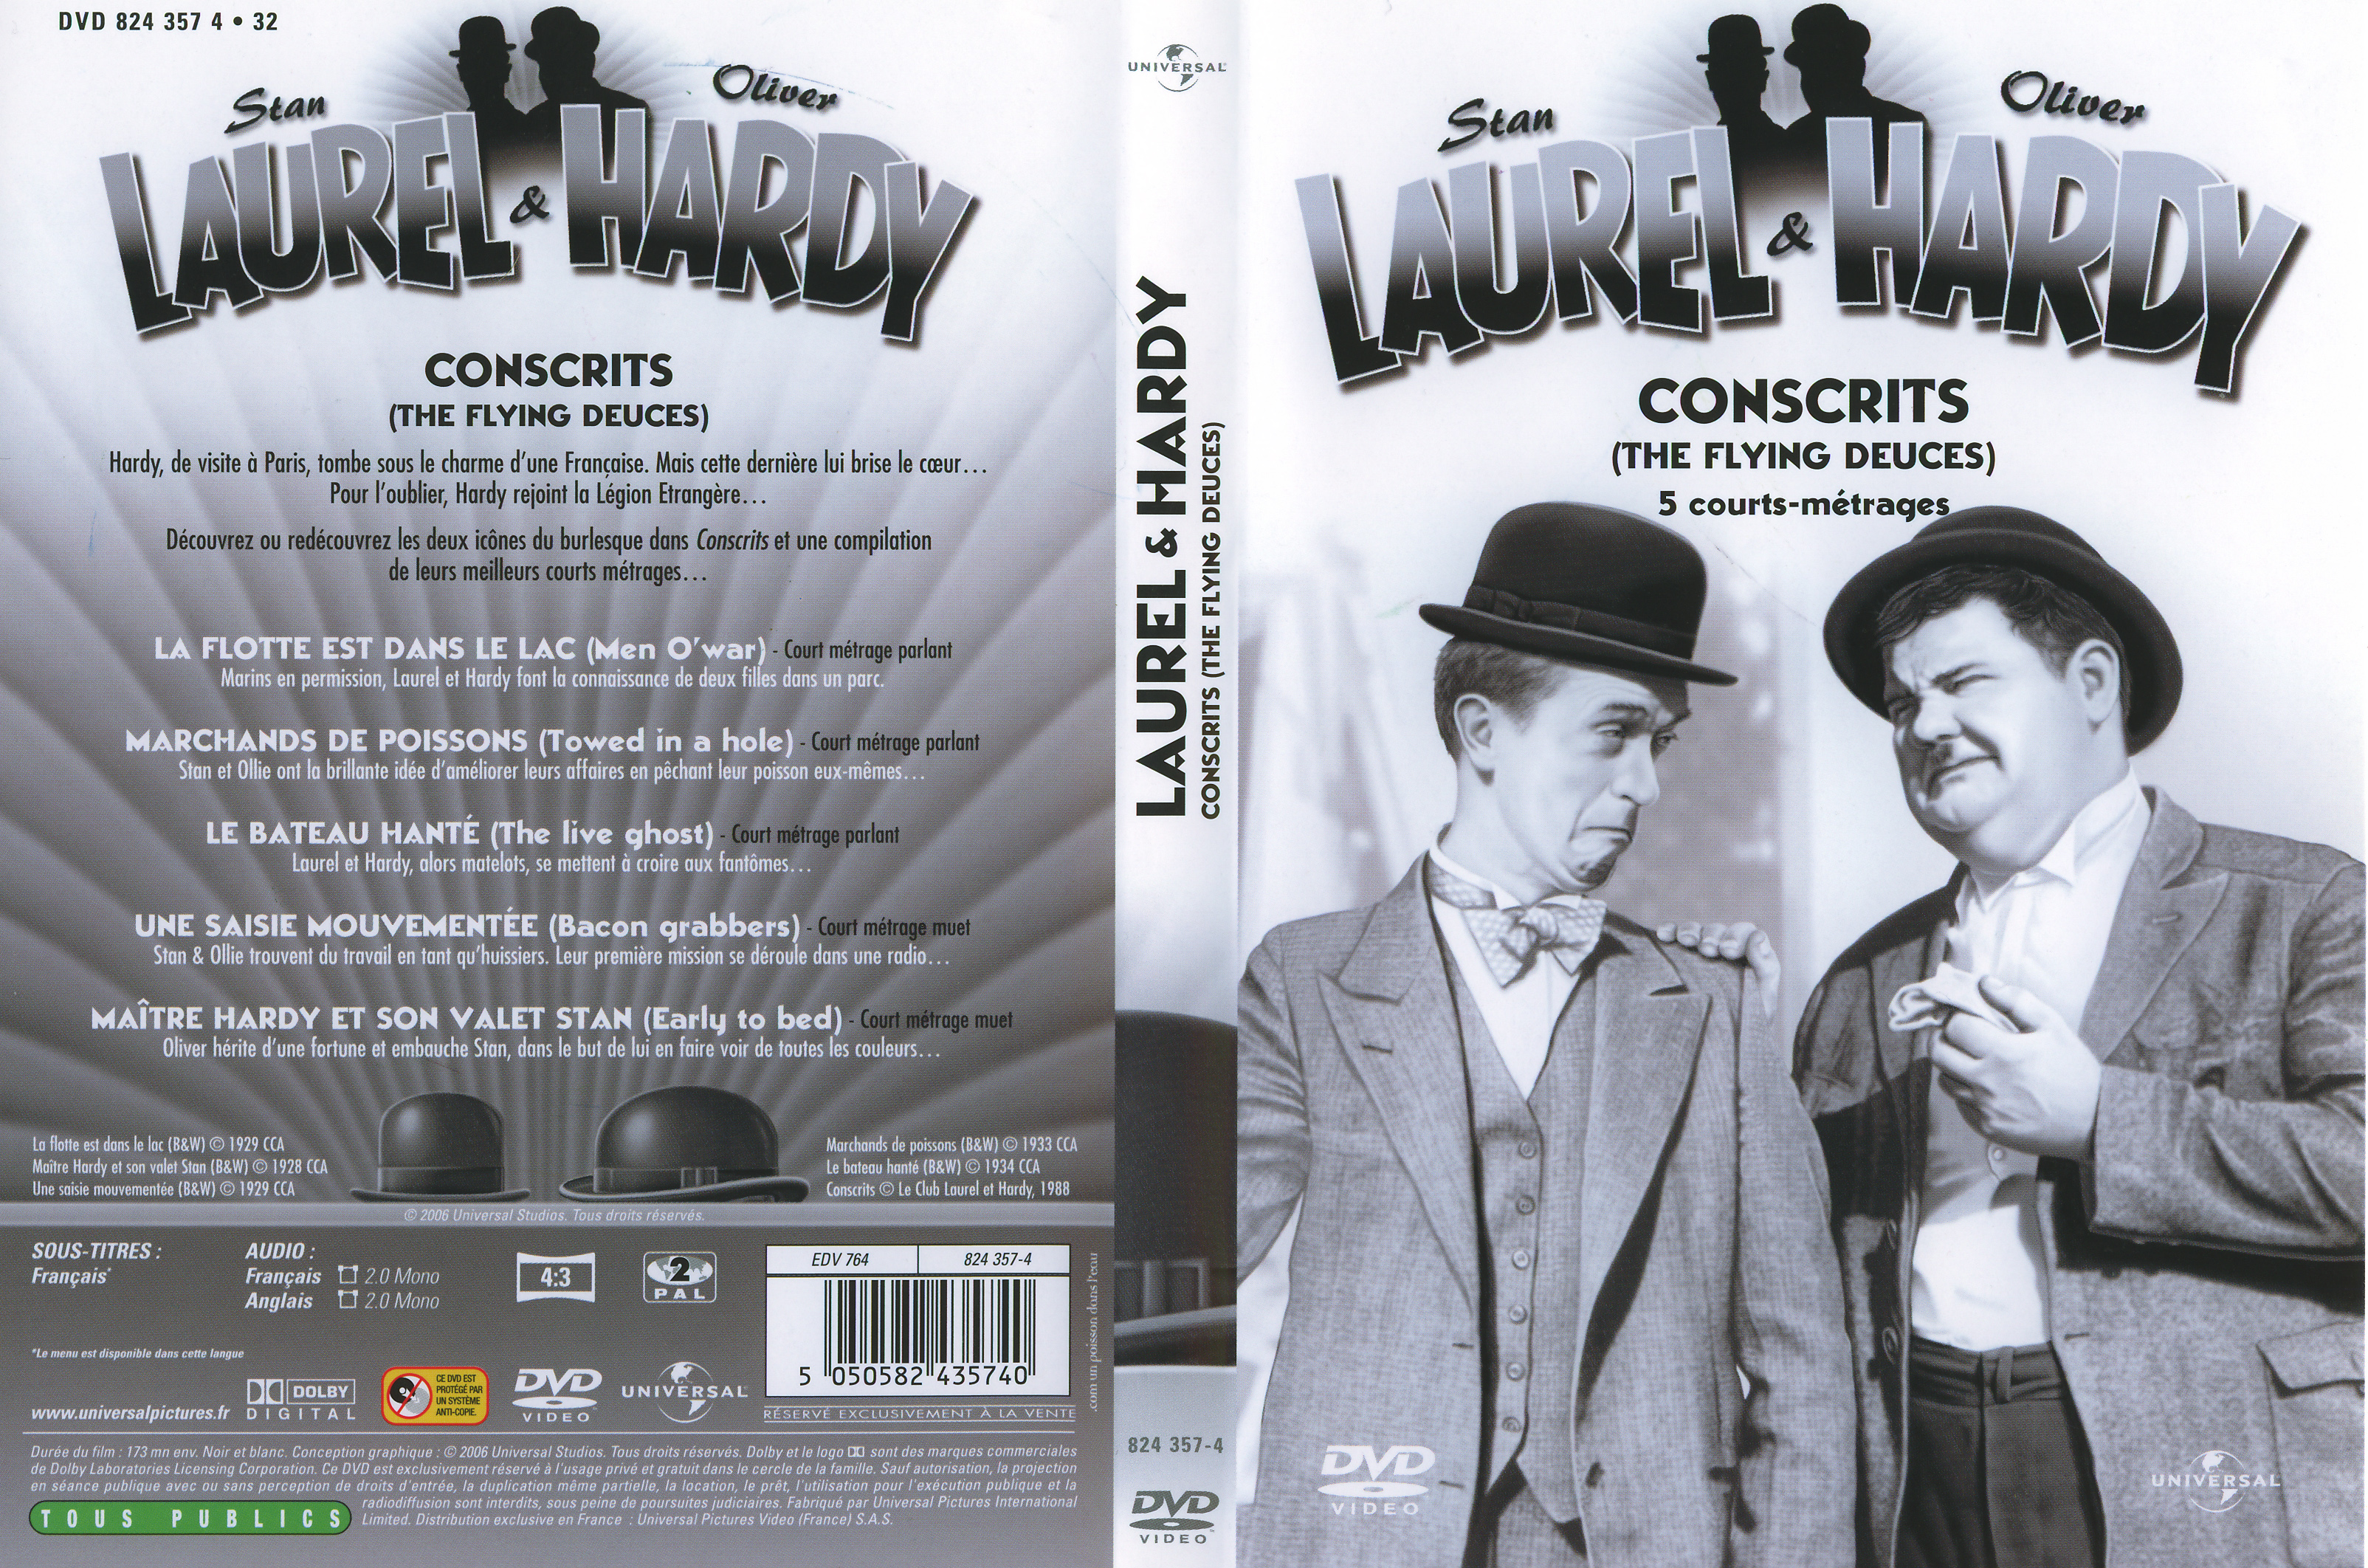 Jaquette DVD Laurel et Hardy Conscrits